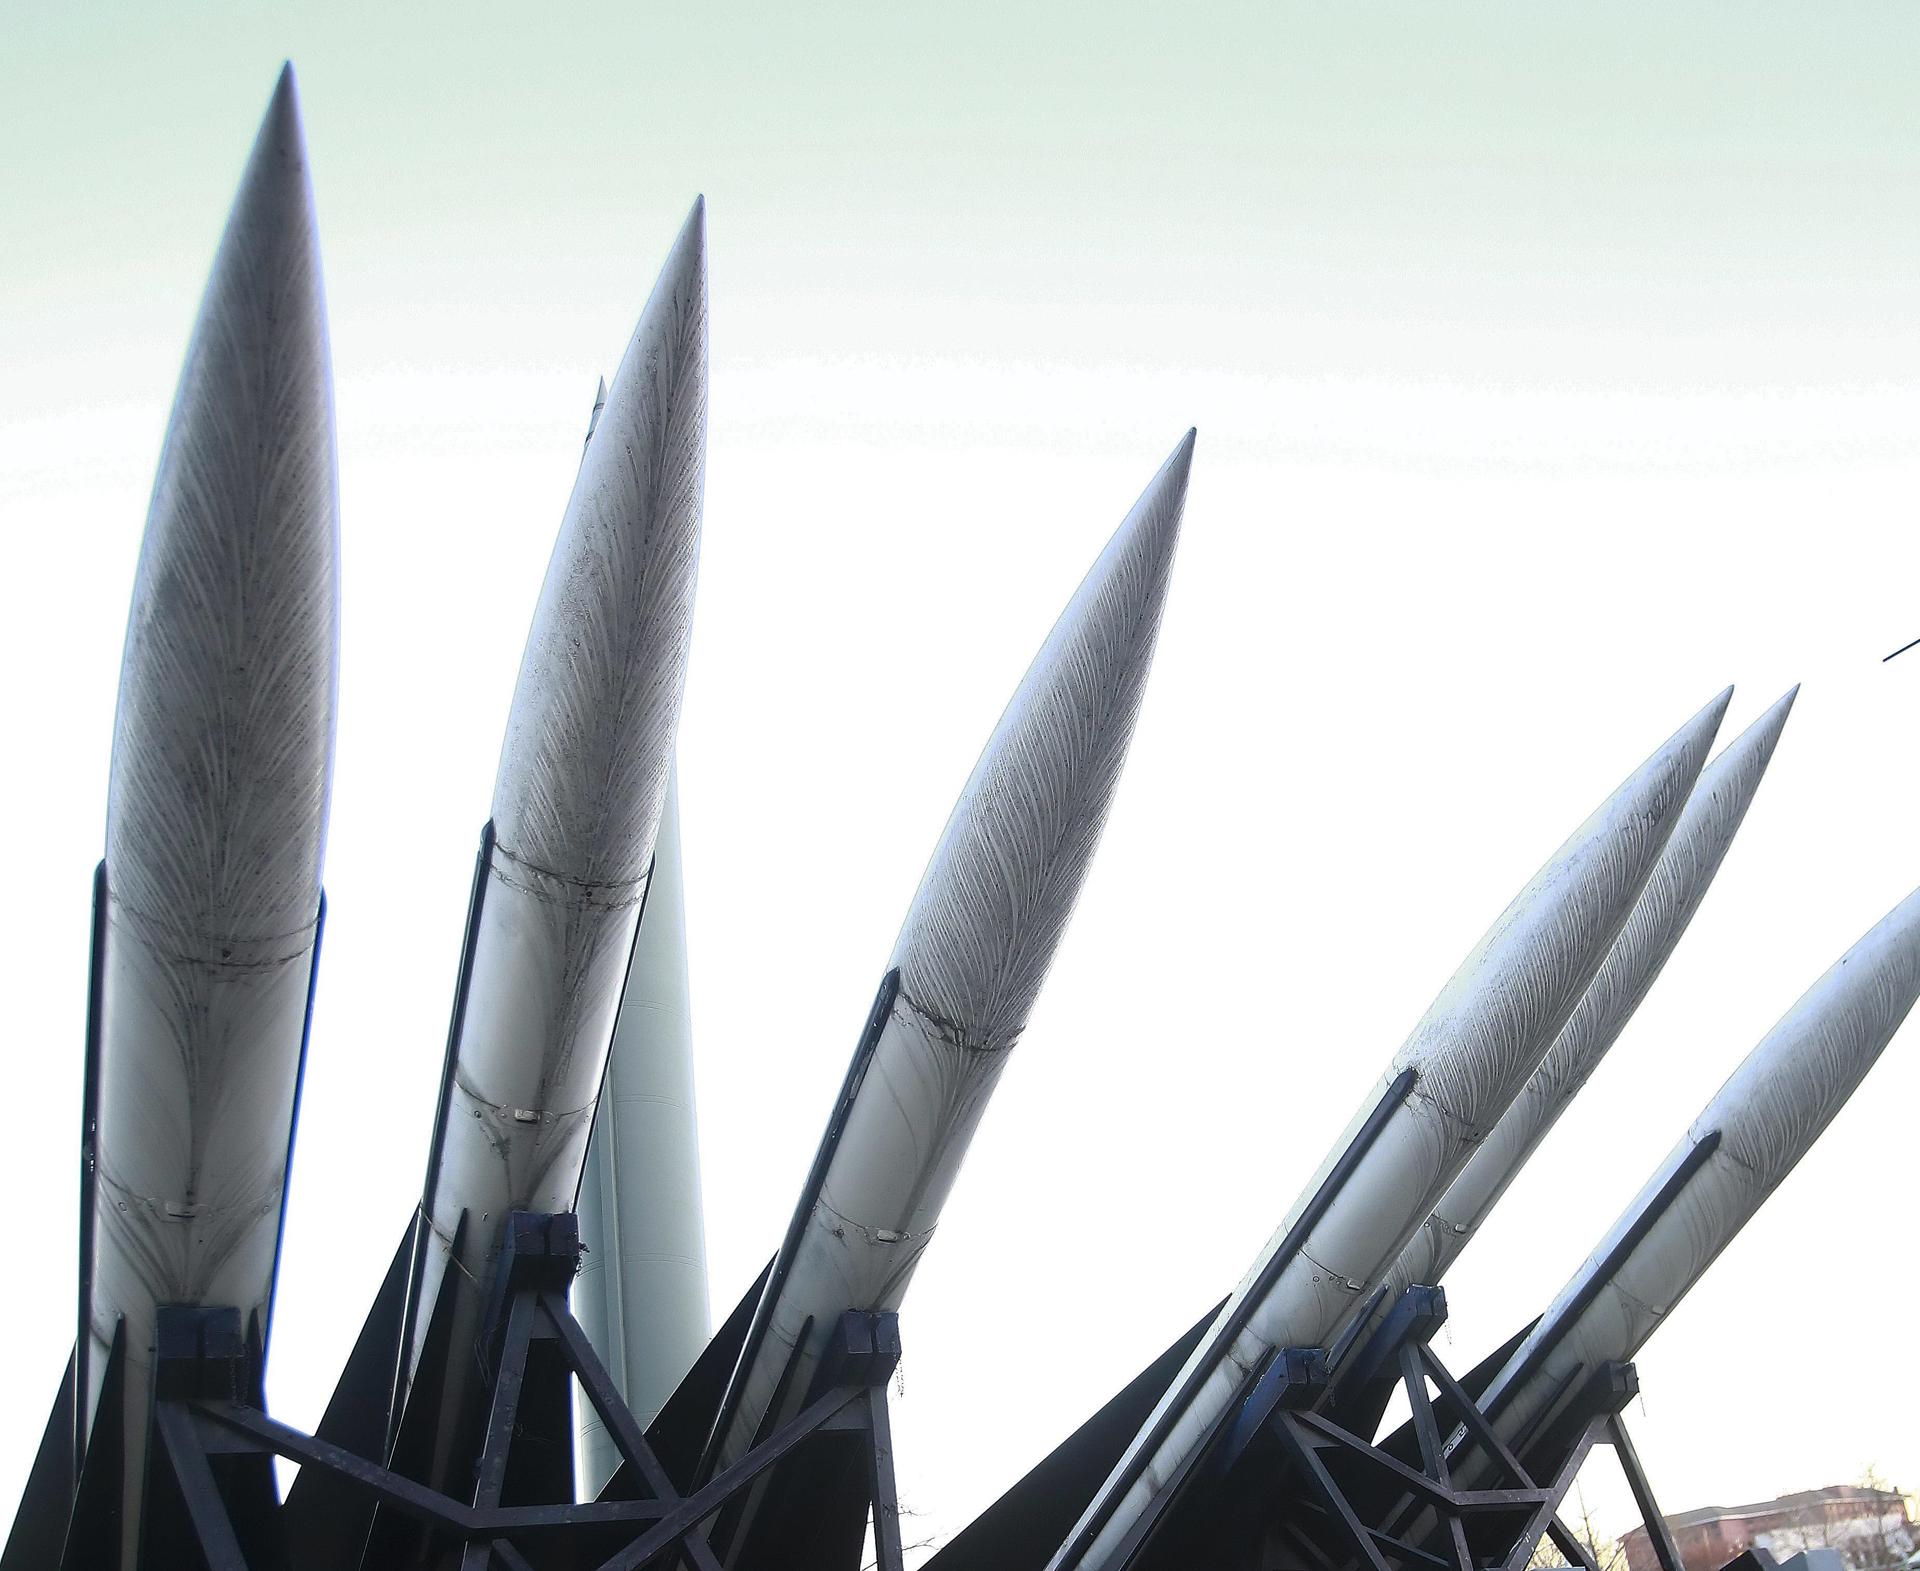 Imagen de varios misiles norcoreanos Scud-B en el Museo Memorial de la Guerra de Corea, en Seúl, Corea del Sur. EFE/KIM HEE-CHUL